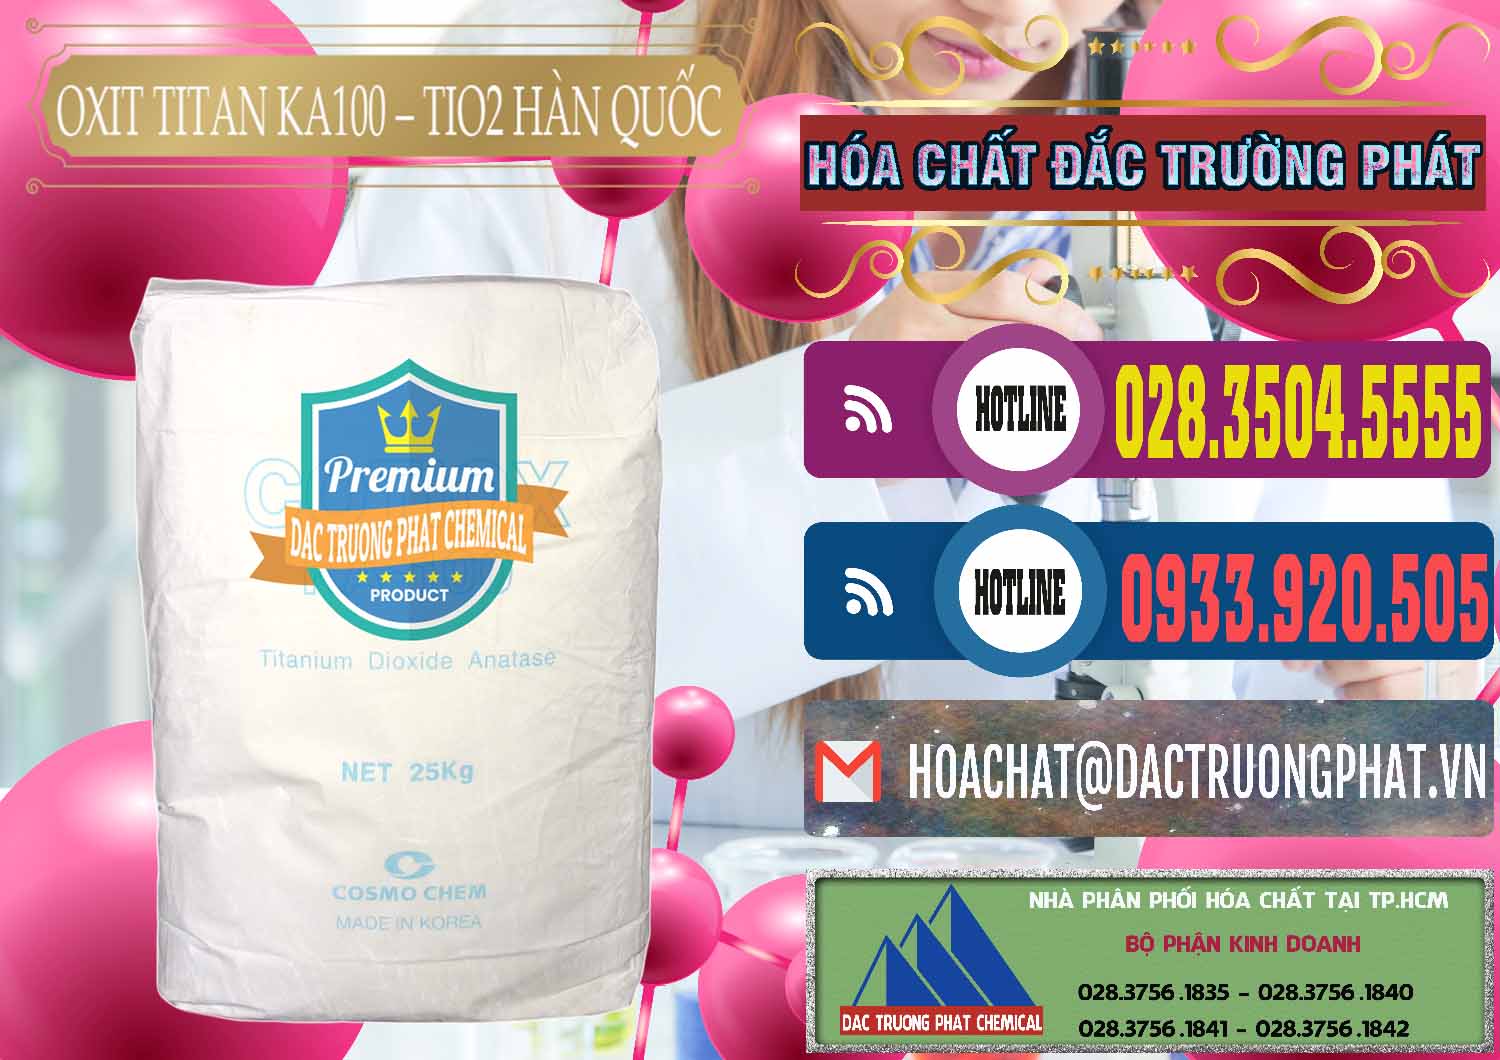 Công ty bán - phân phối Oxit Titan KA100 – Tio2 Hàn Quốc Korea - 0107 - Cung cấp và kinh doanh hóa chất tại TP.HCM - muabanhoachat.com.vn